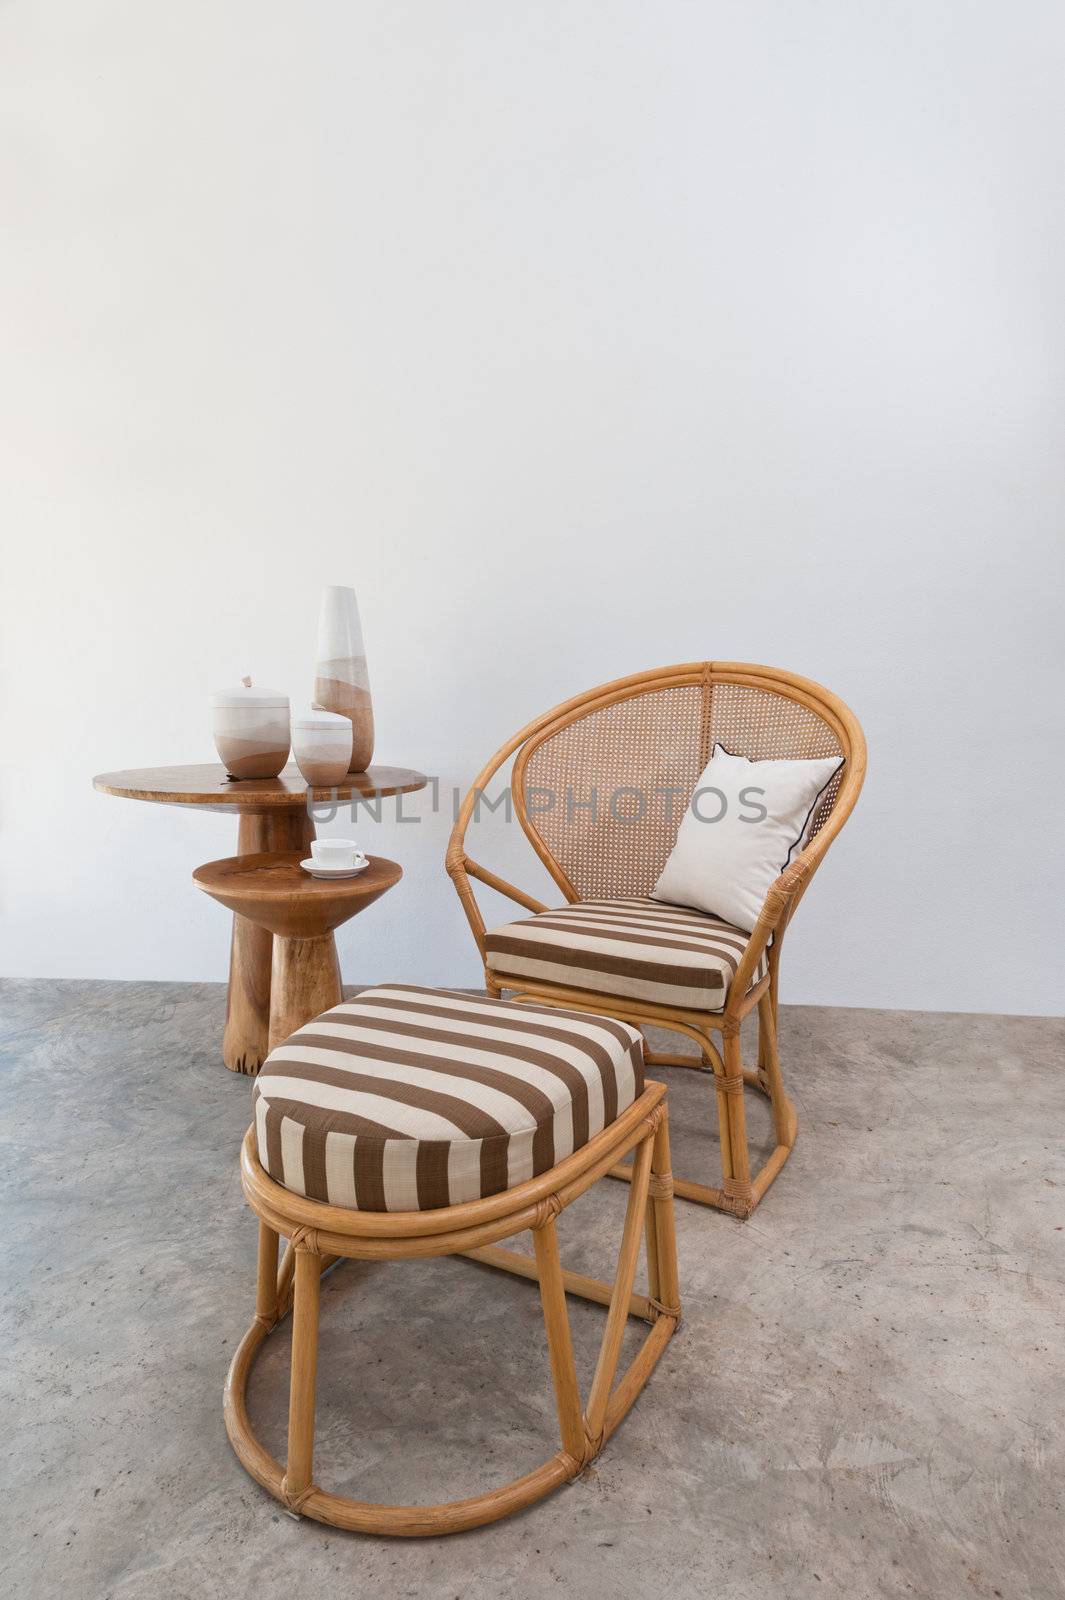 Bamboo rattan furniture by 3523Studio